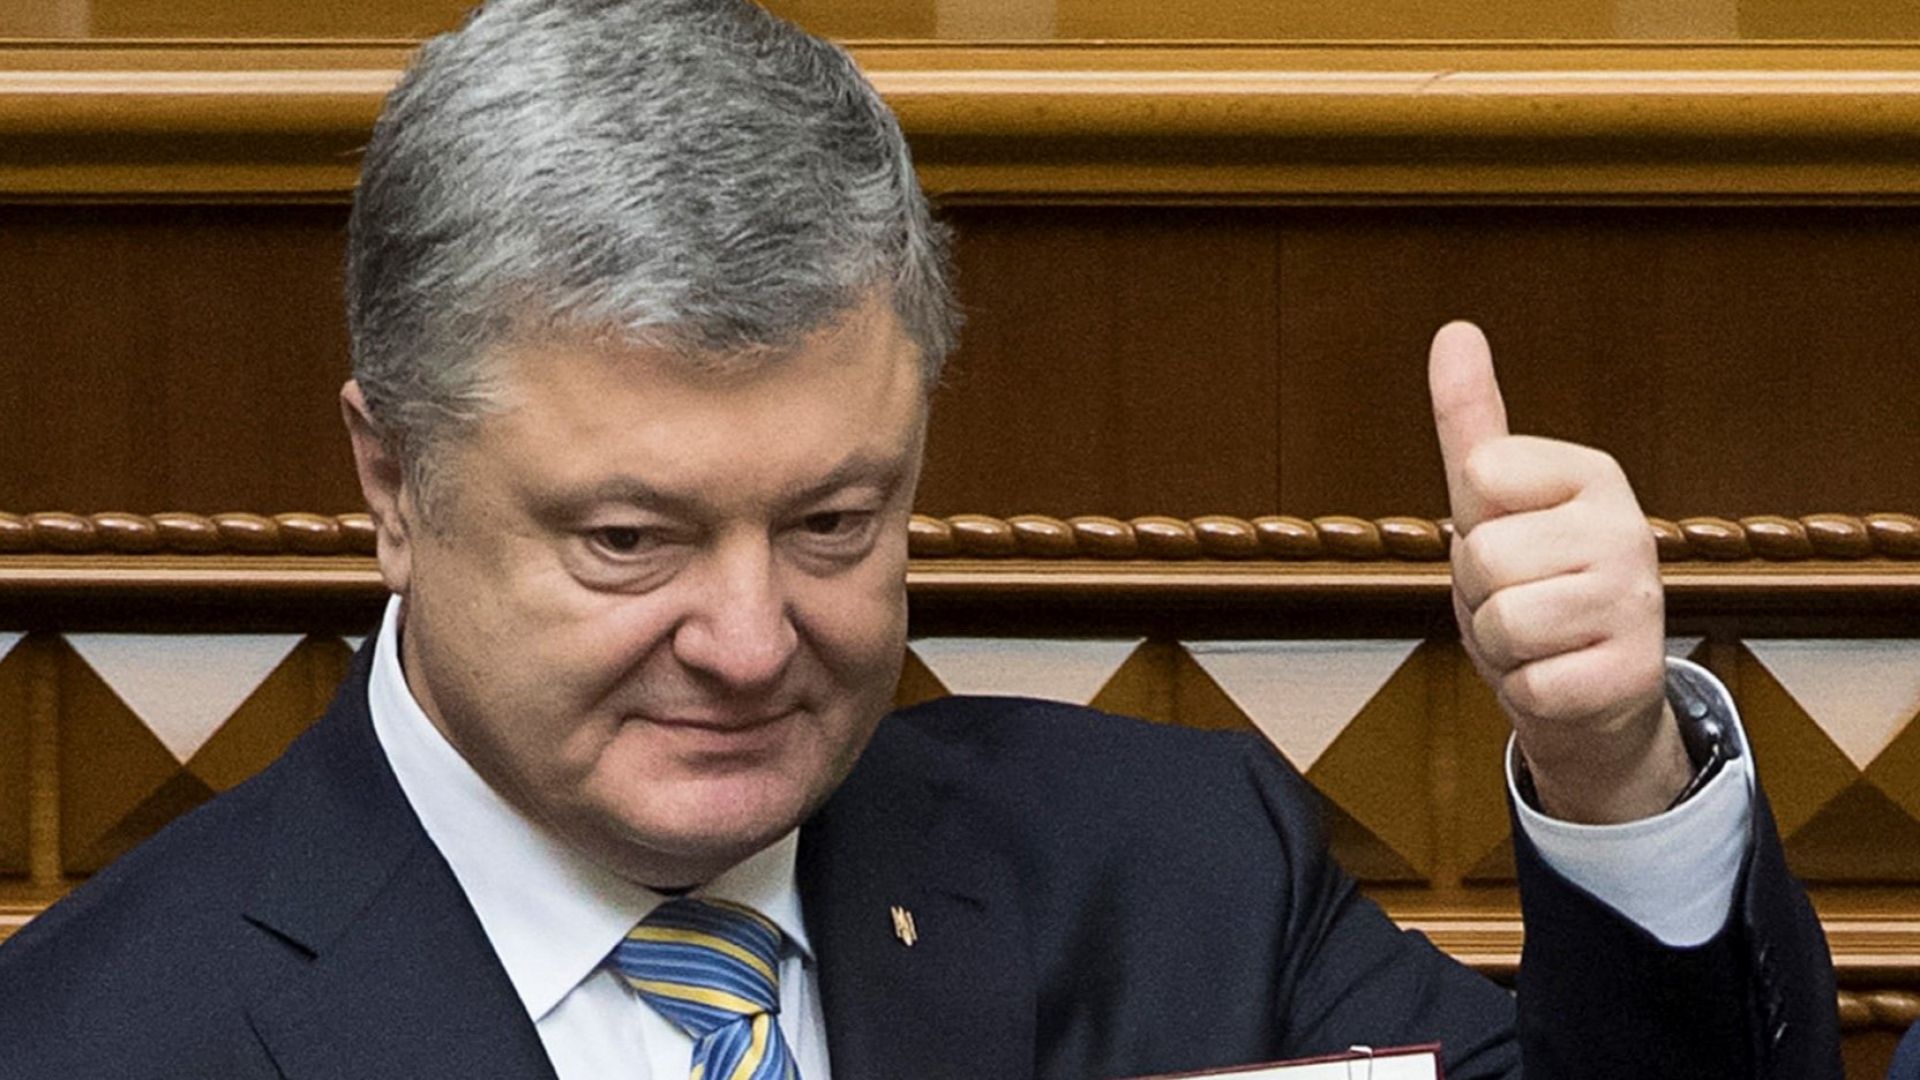 Президентът на Украйна Петро Порошенко оповести нова ракетна програма предвиждаща